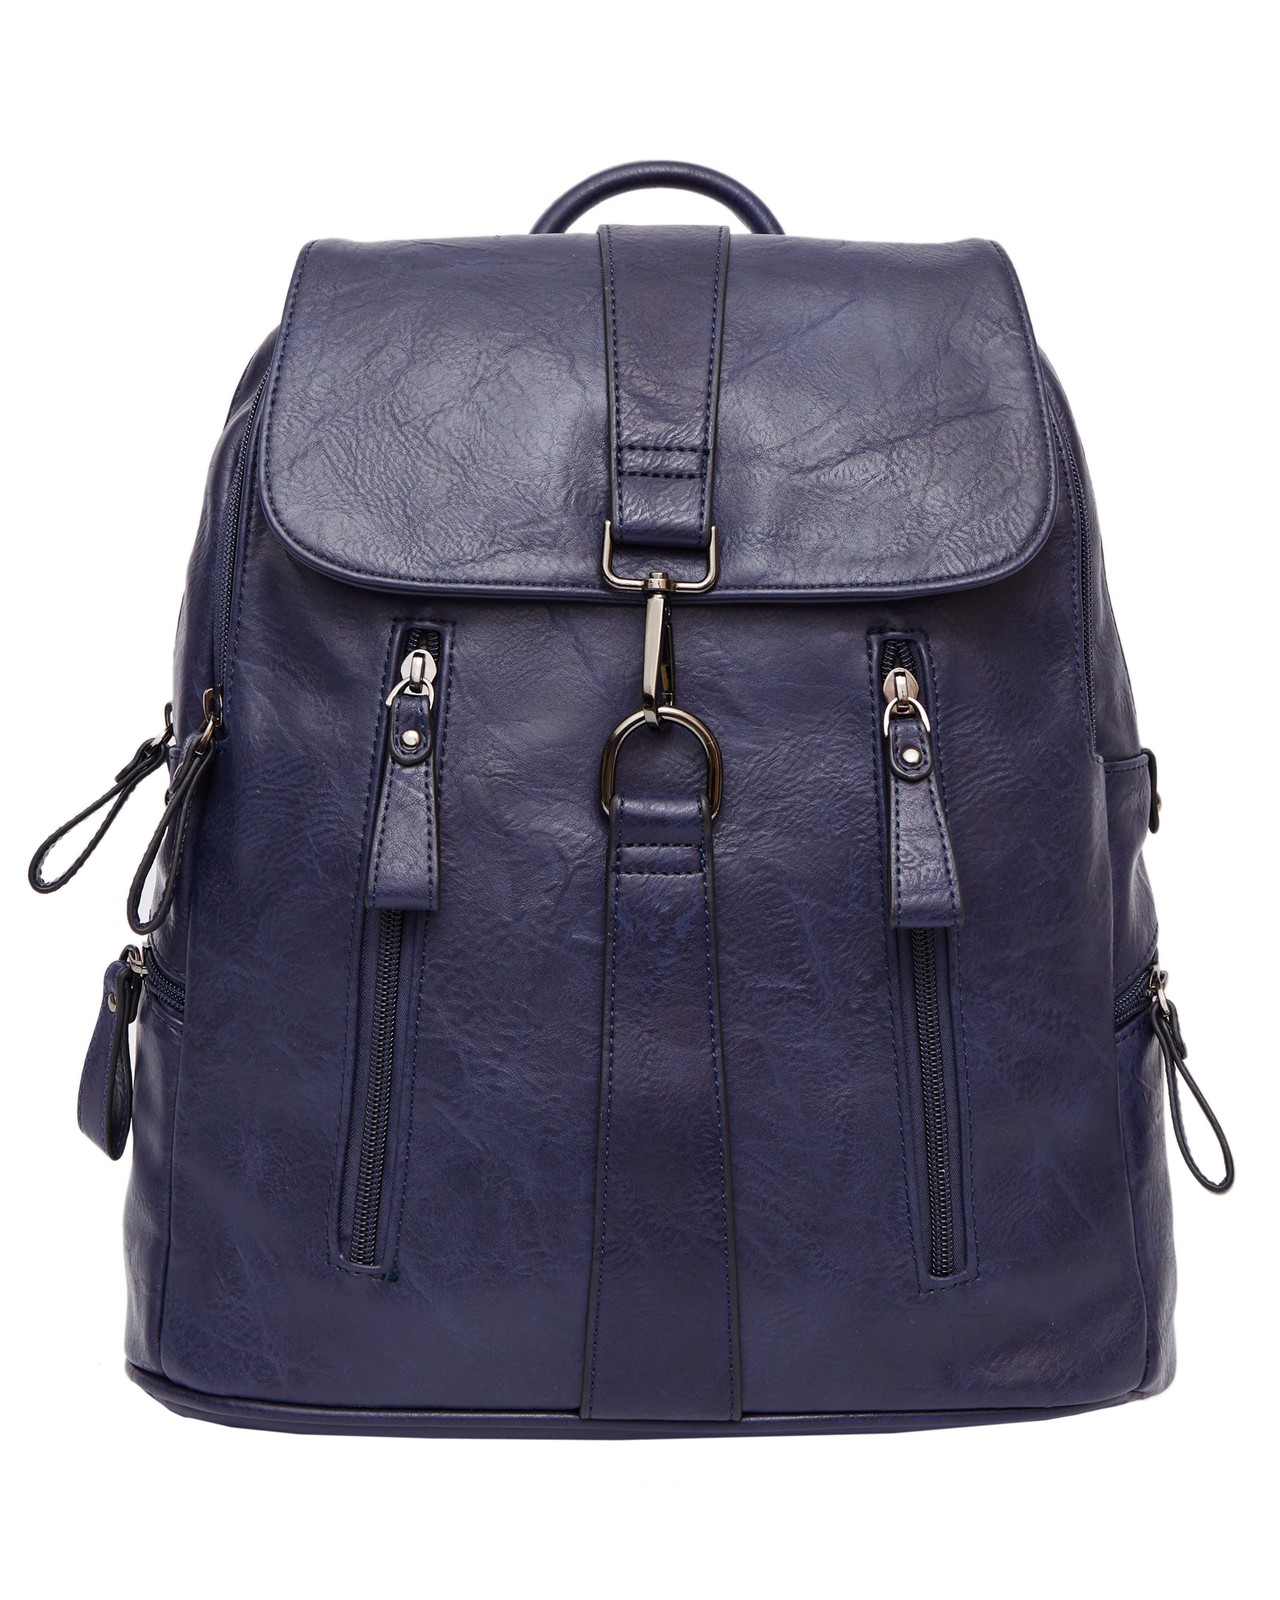 Рюкзак женский BAGS-ART PY1971 синий, 35х30х10 см